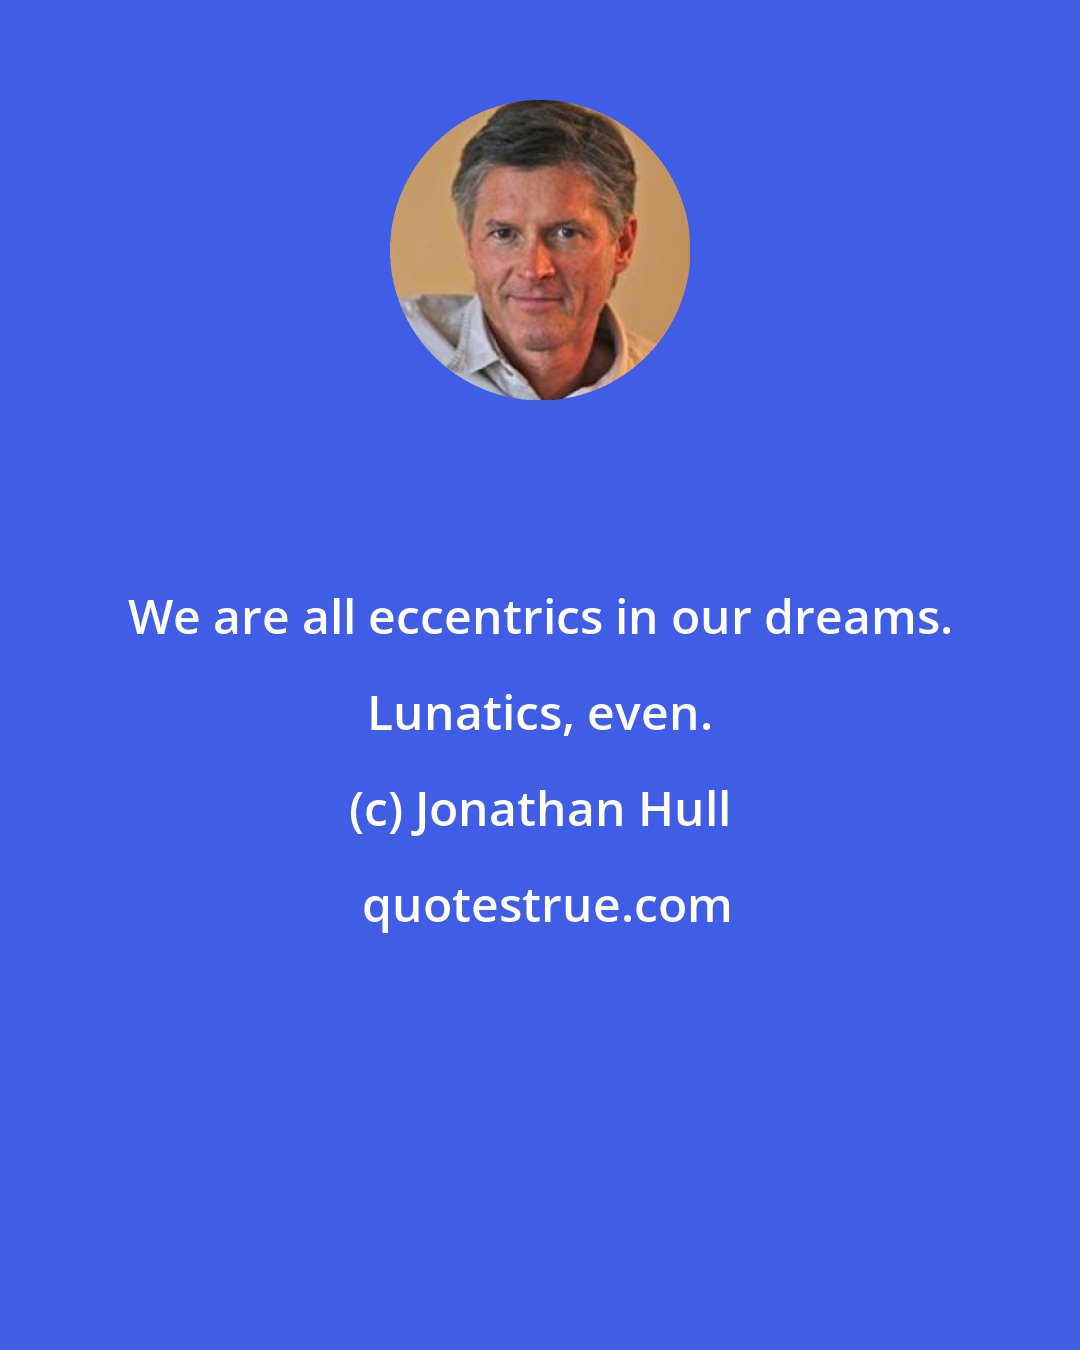 Jonathan Hull: We are all eccentrics in our dreams. Lunatics, even.